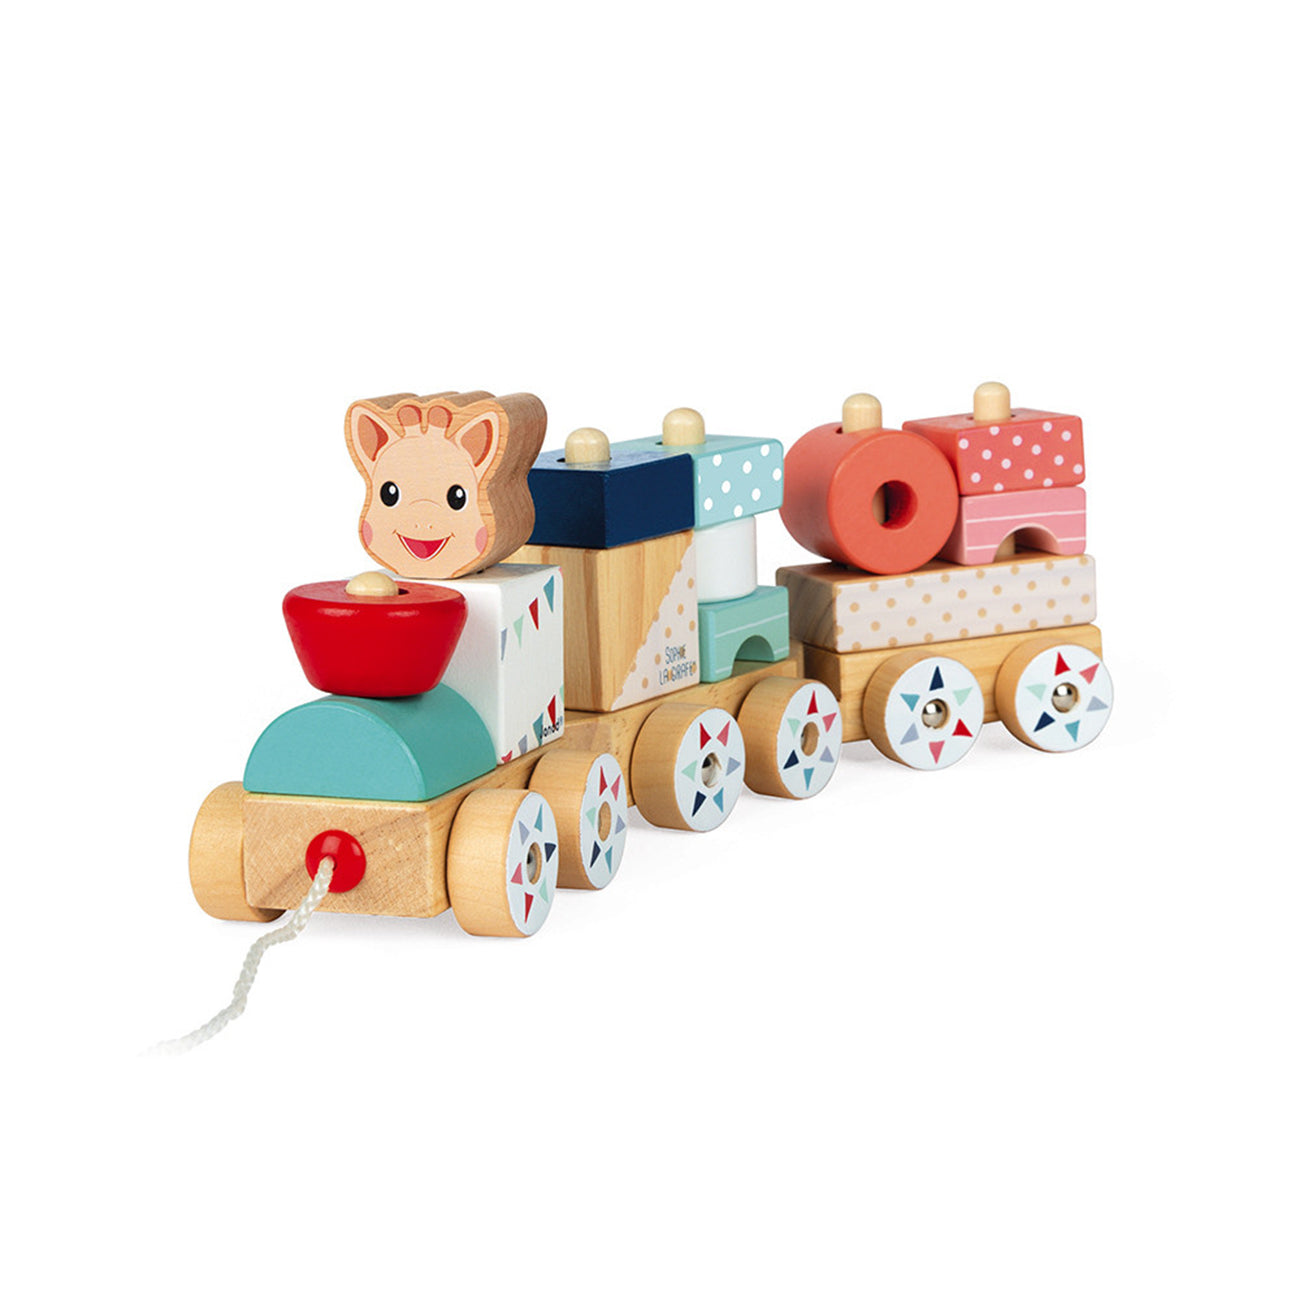 Trenulet cu vagoane si cuburi sortatoare pentru copii, Sophie la girafe, din lemn, +12 luni, Janod